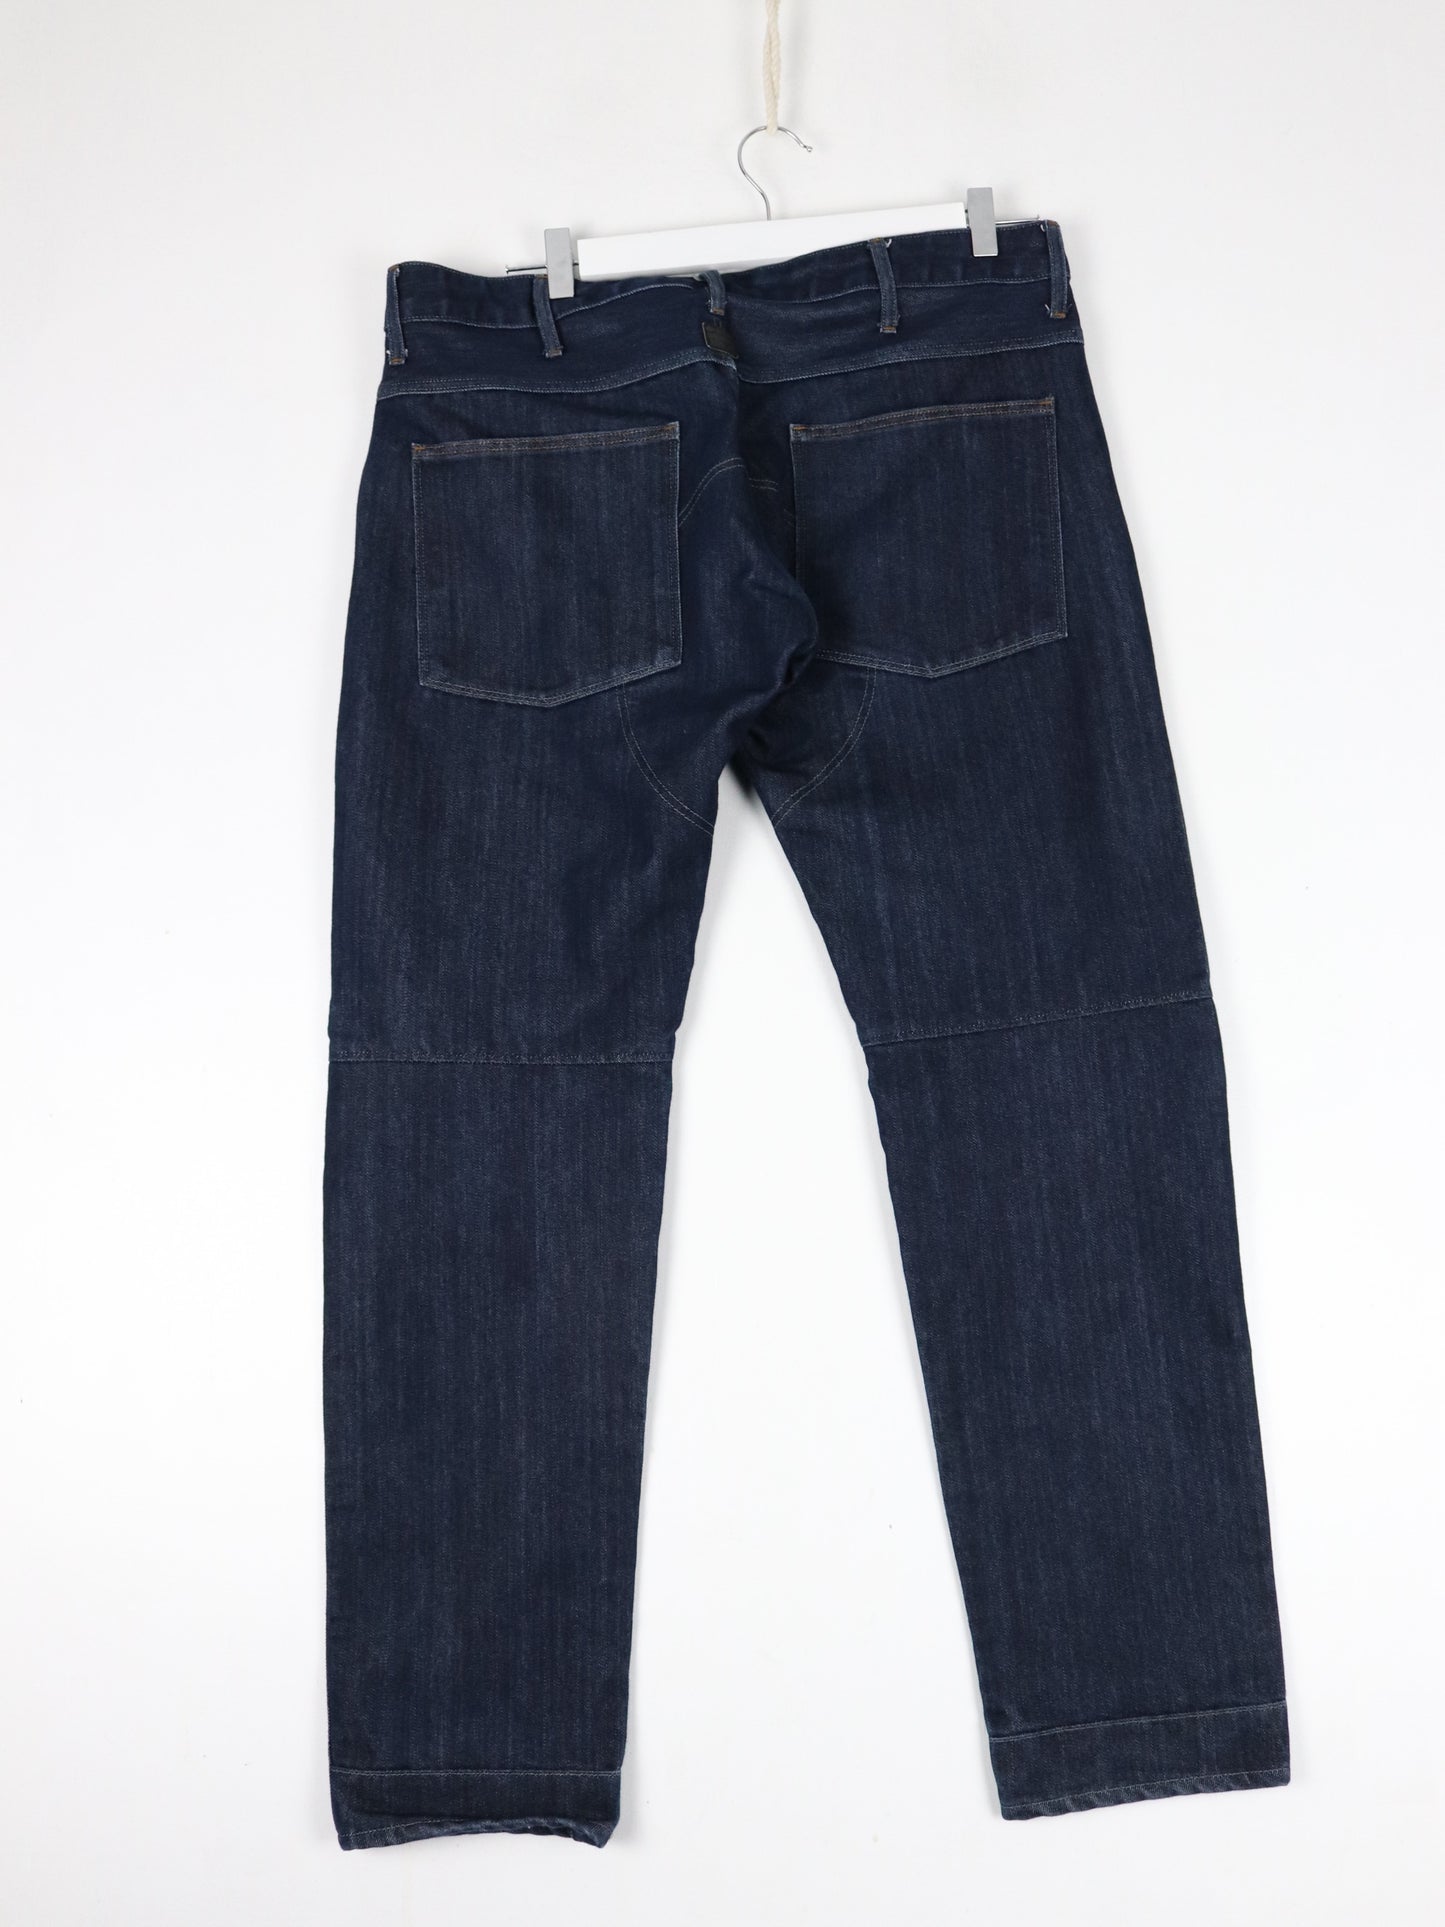 G Star Raw Pants Mens 34 x 32 Blue Denim Jeans